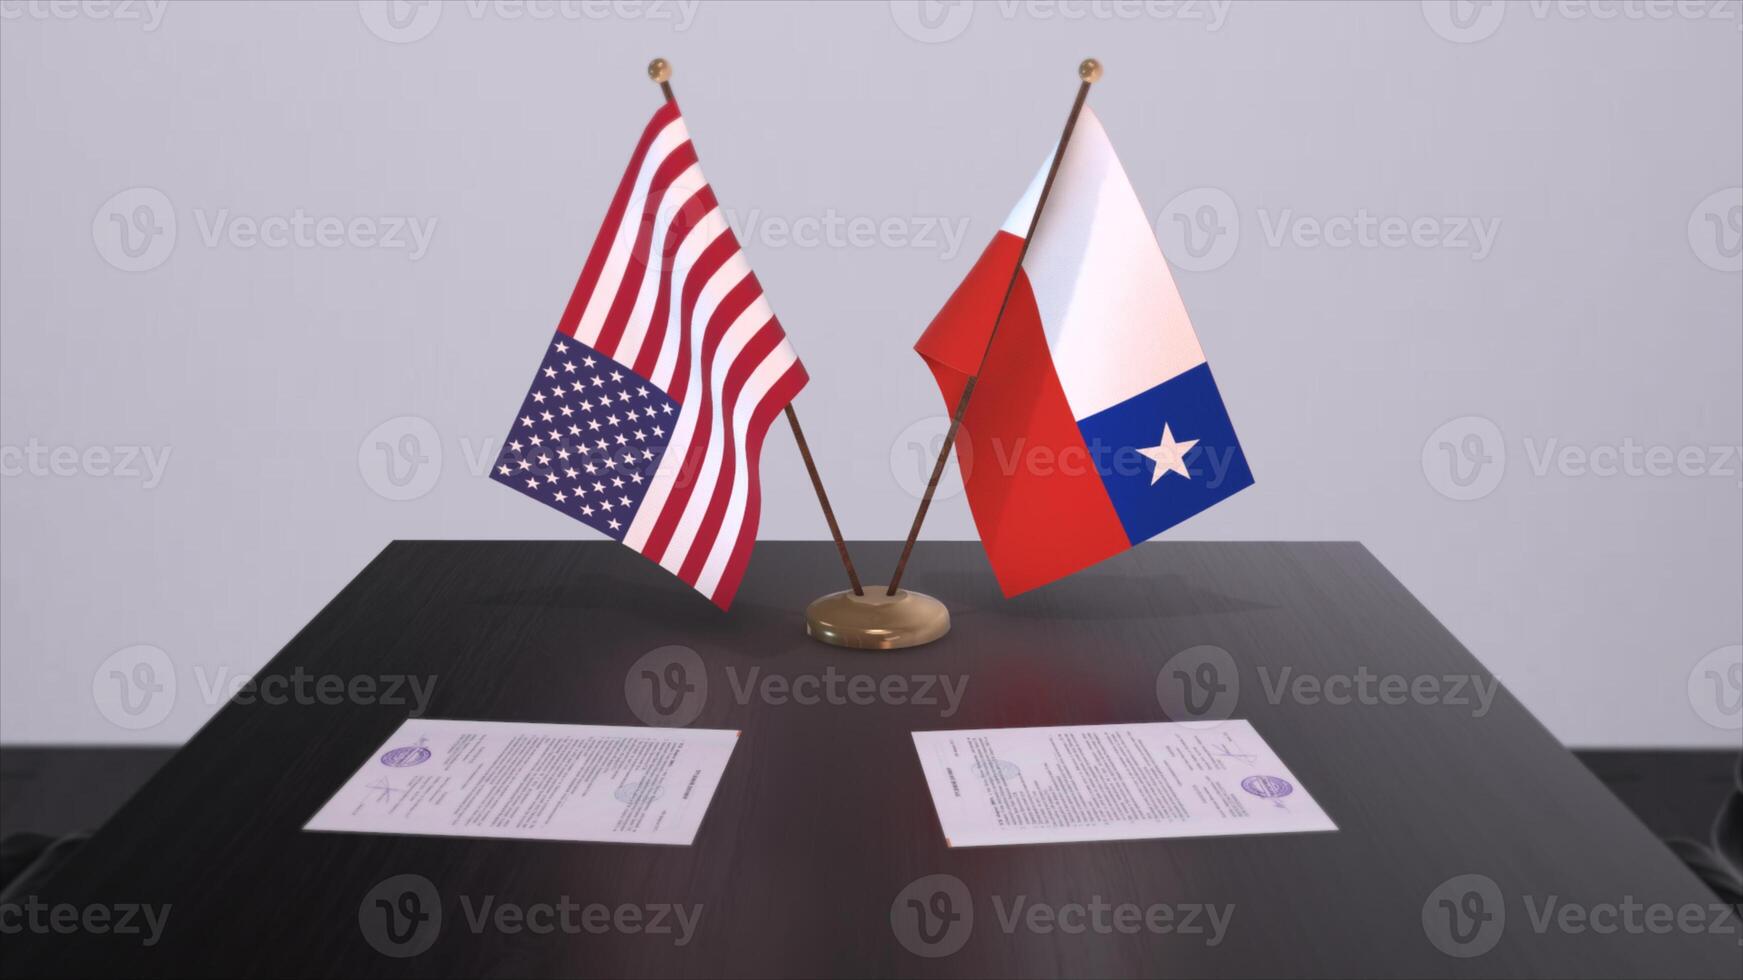 Chili et Etats-Unis à négociation tableau. affaires et politique 3d illustration. nationale drapeaux, diplomatie accord. international accord photo